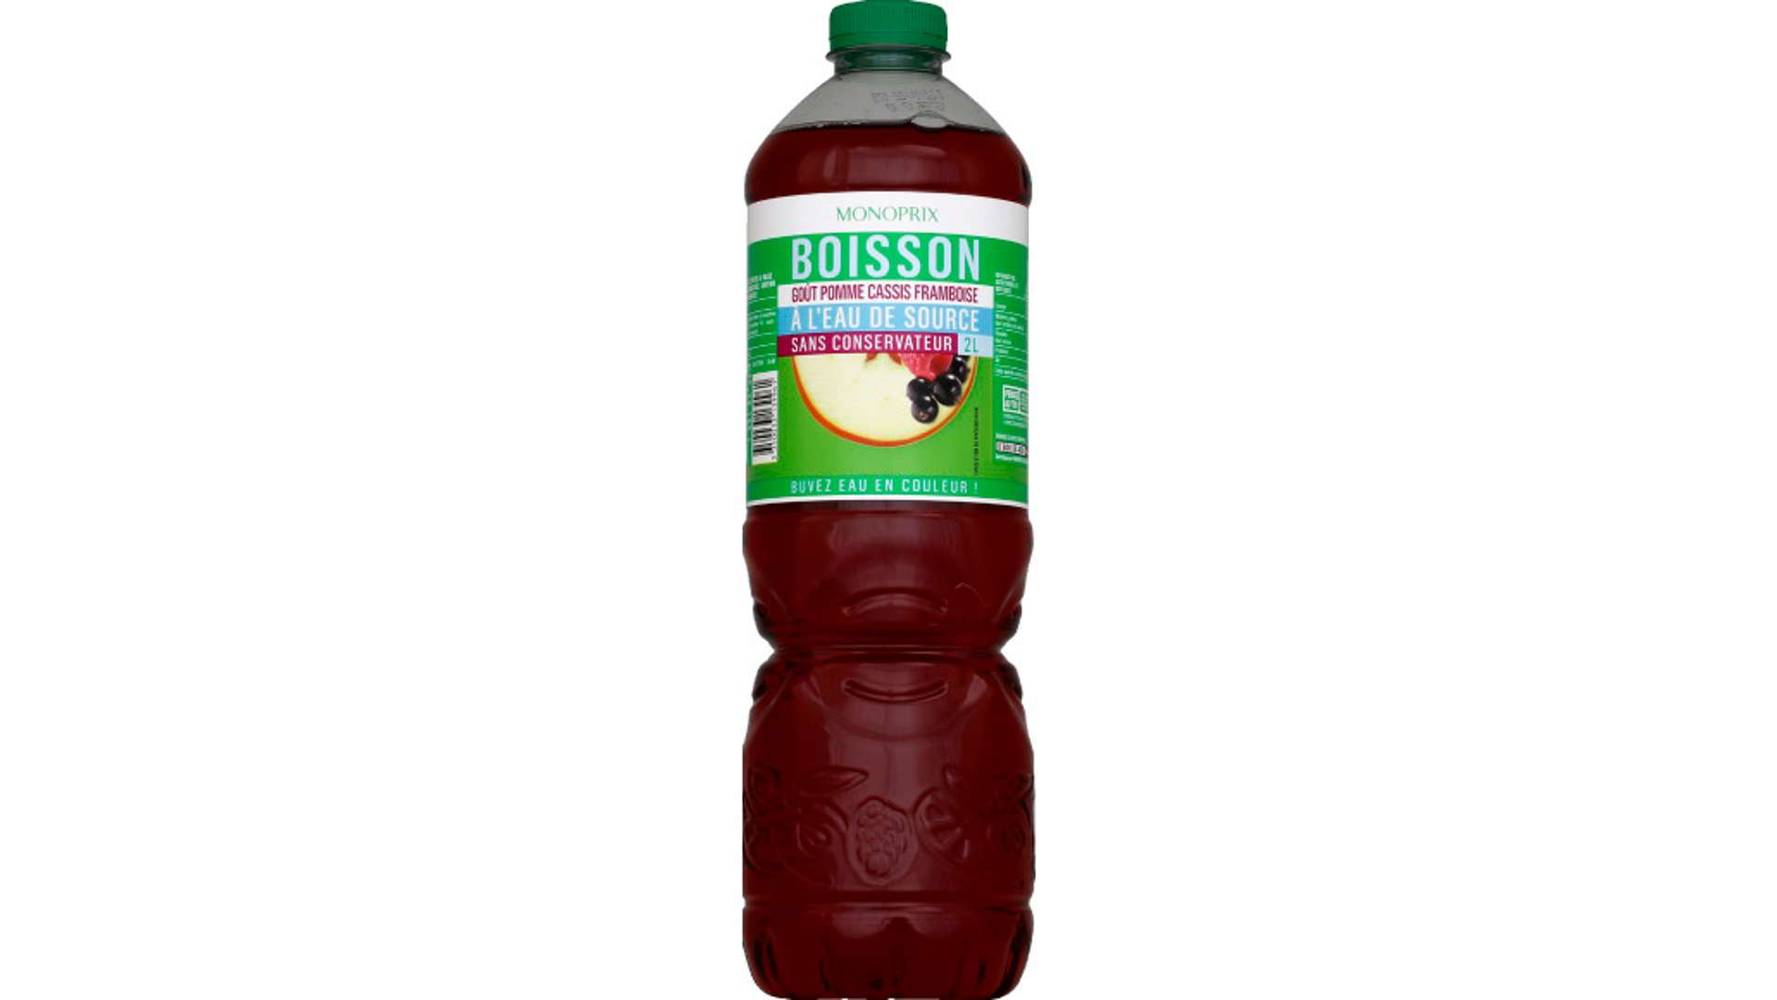 Monoprix Boisson goût pomme cassis framboise à l'eau de source La bouteille de 2 l